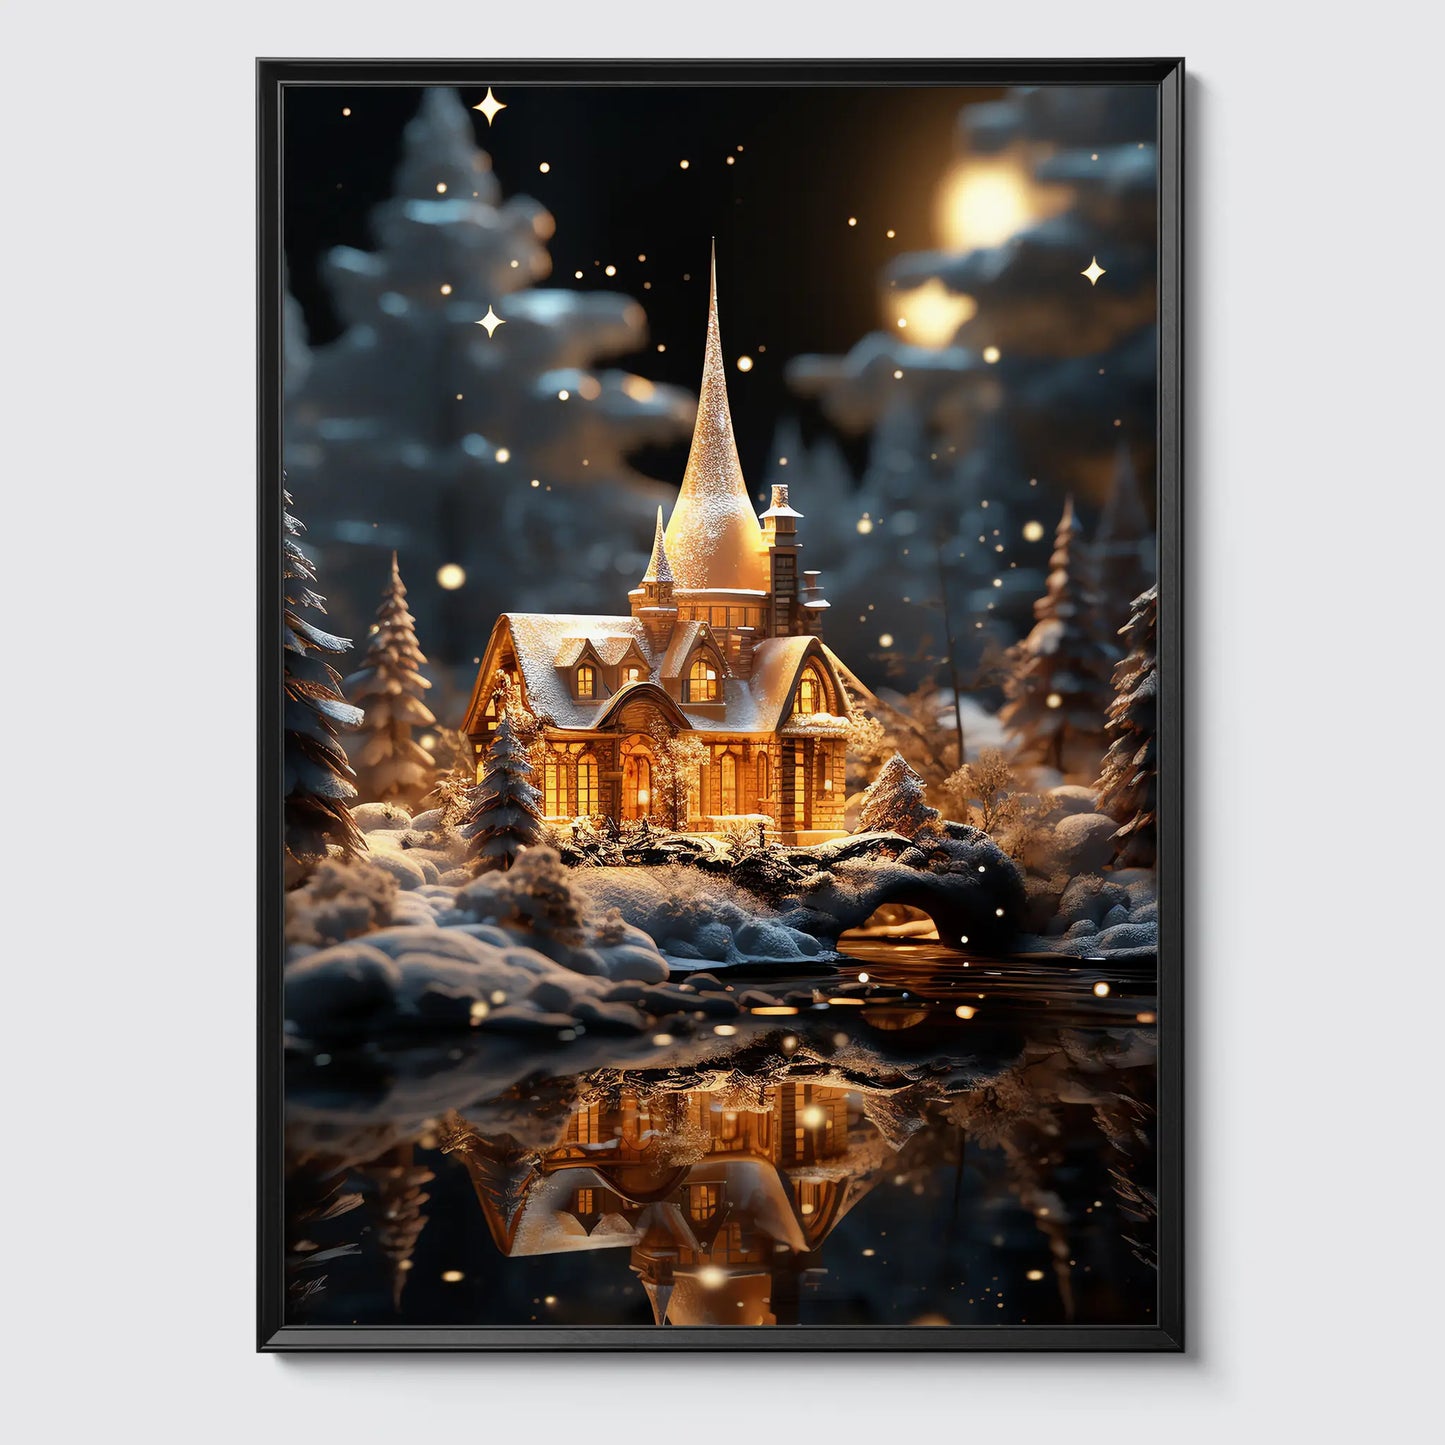 Weihnachten in der Heimat No 16 - Weihnachten- Poster